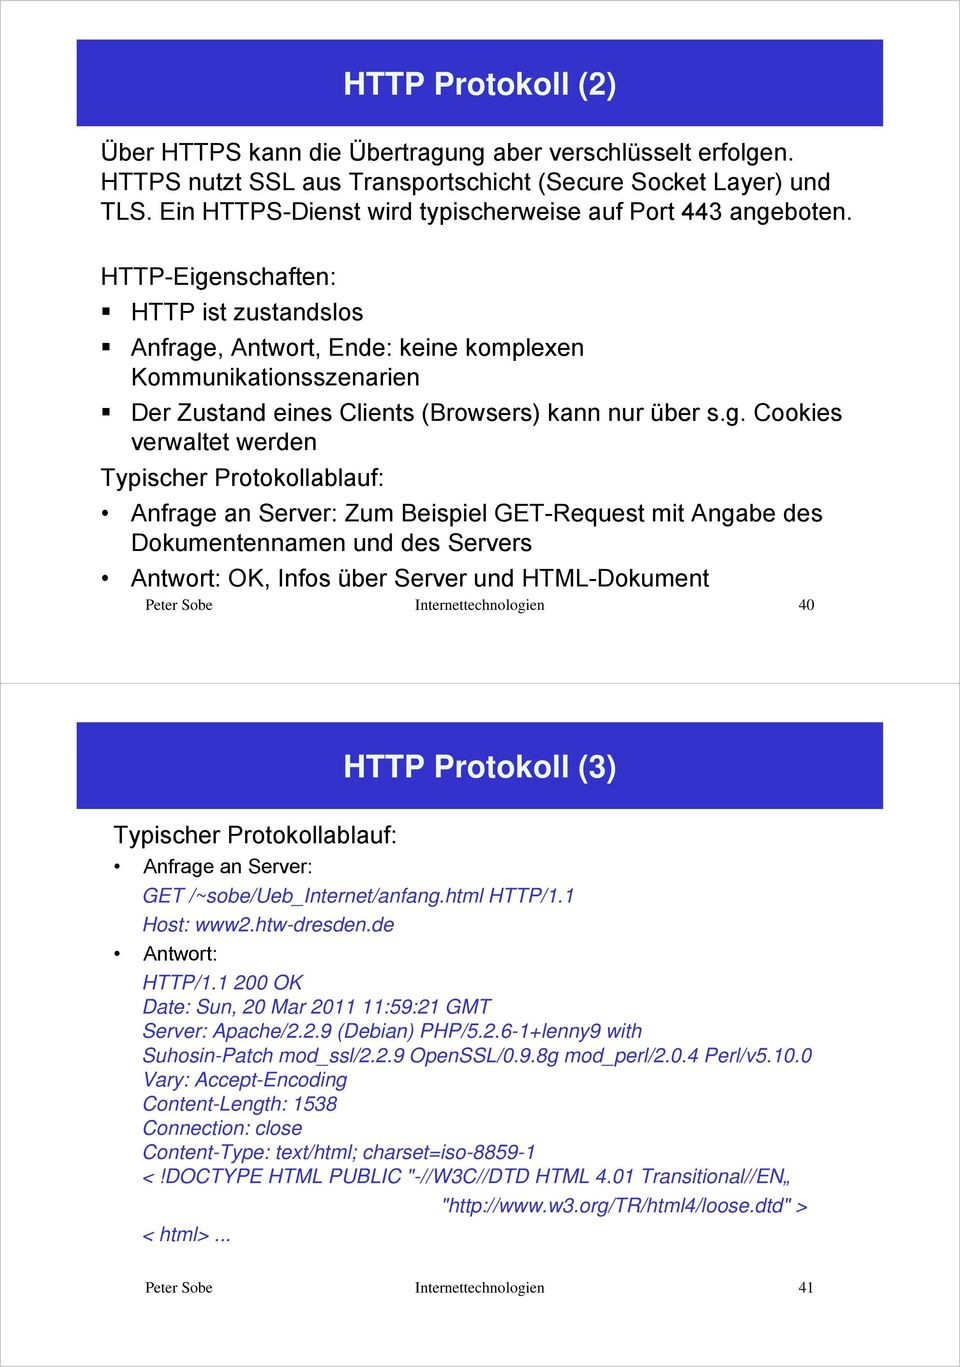 HTTP-Eige